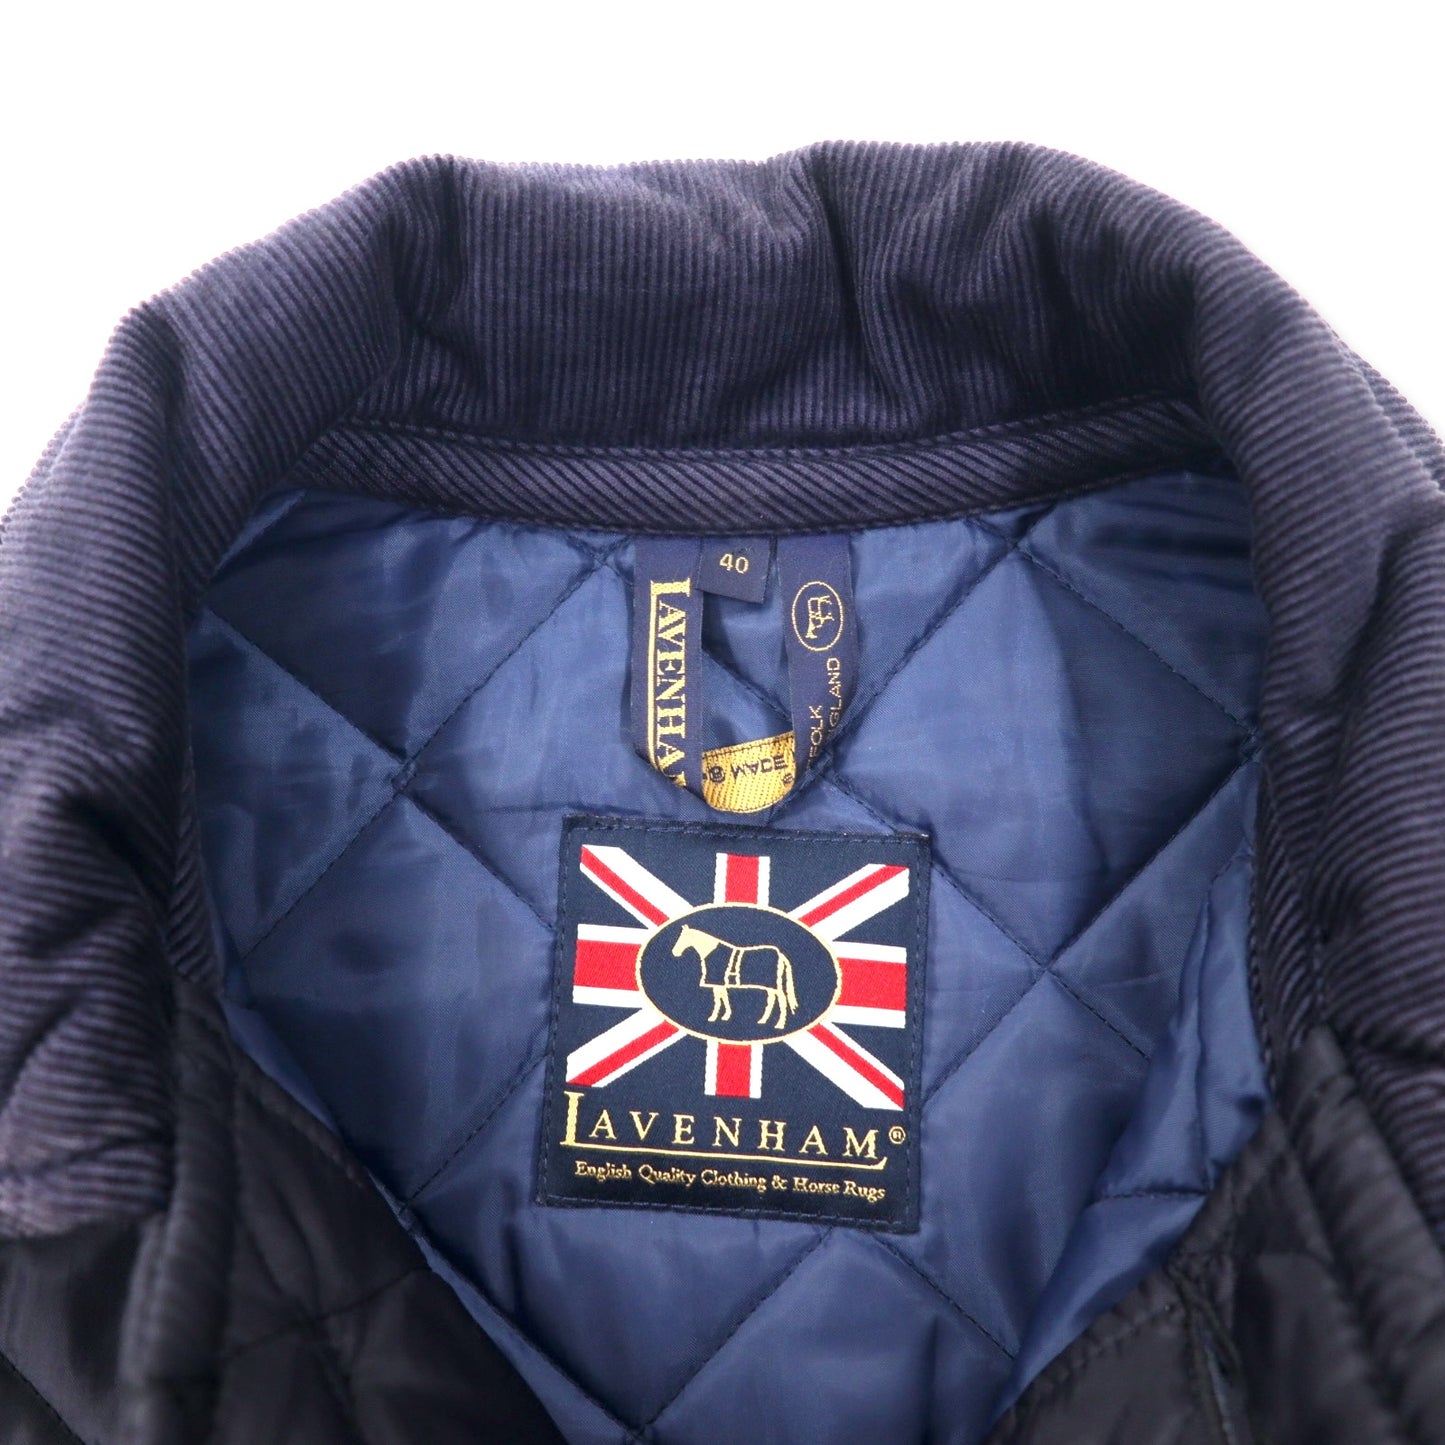 LAVENHAM イギリス製 キルティングジャケット 40 ネイビー ポリエステル